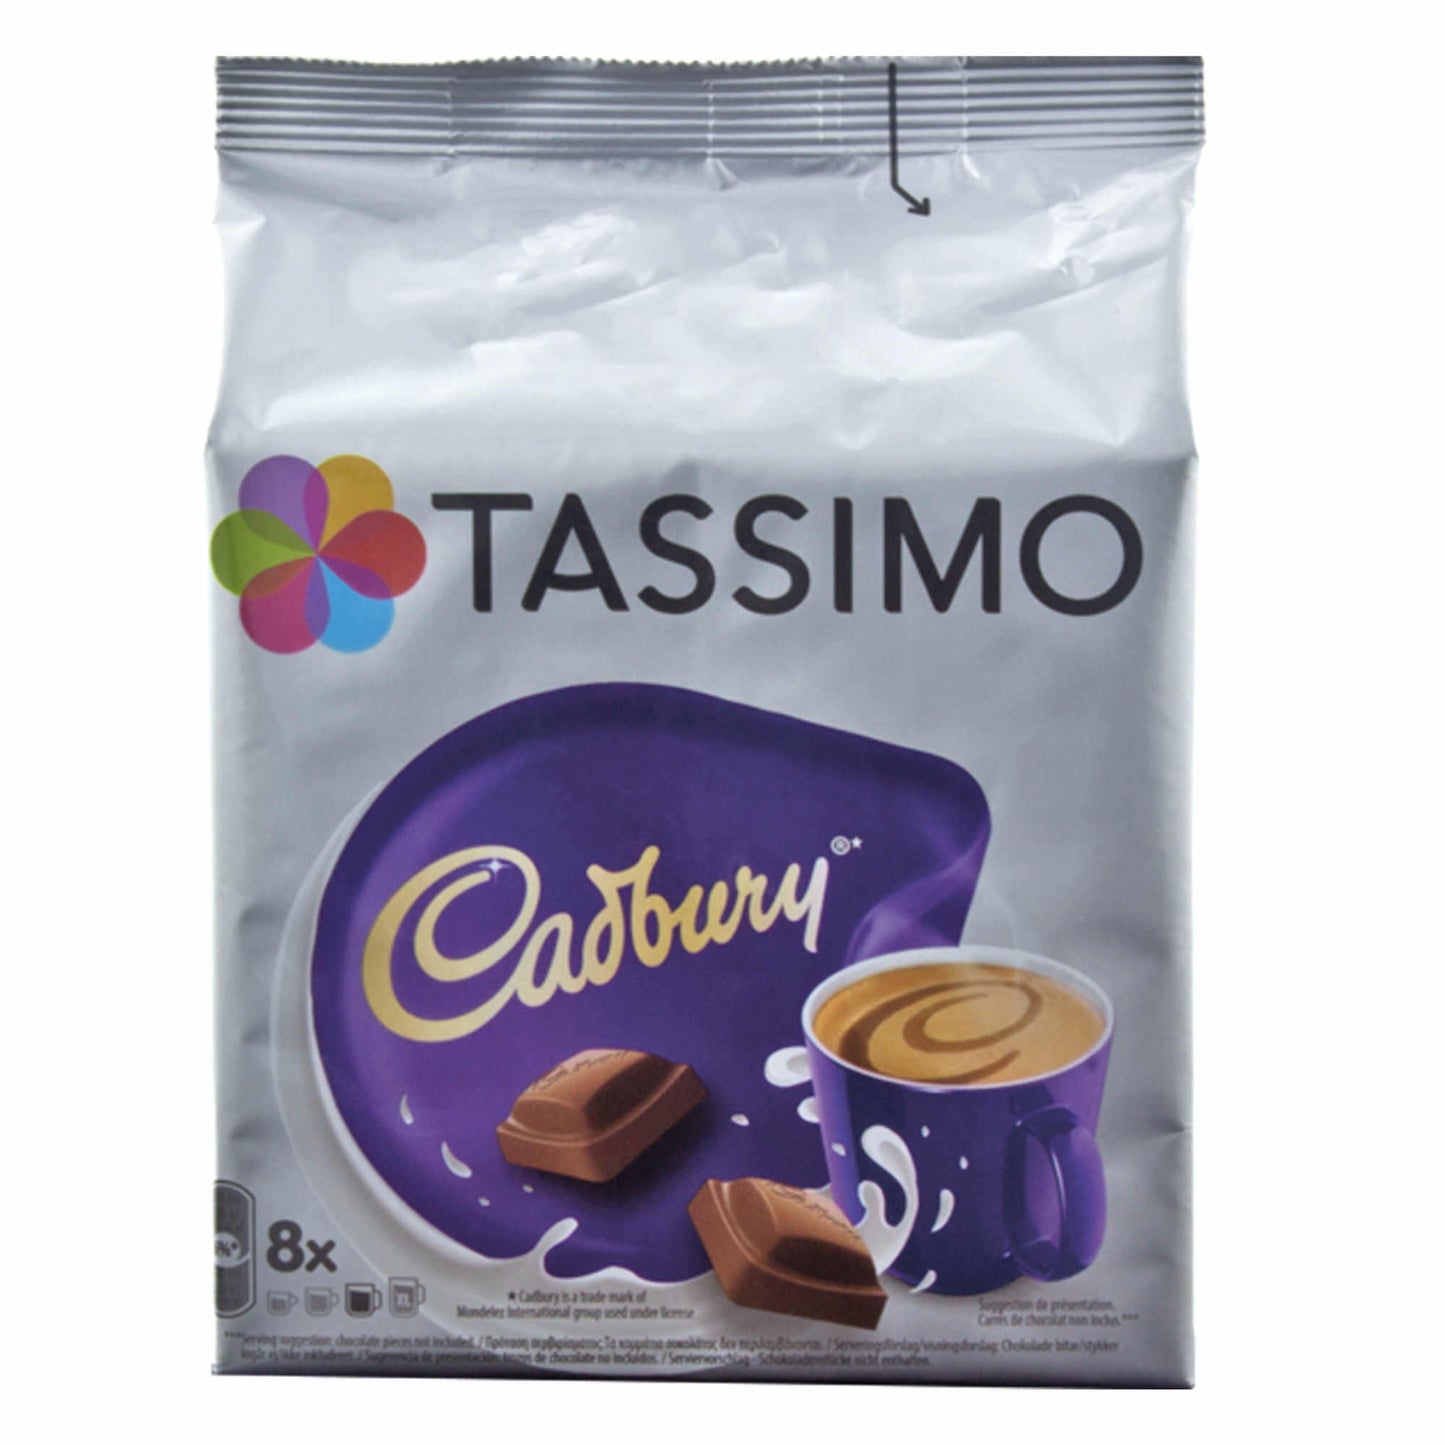 Tassimo Cadbury Kakaospezialität, Kakao, Schokolade, Kapsel, 8 T-Discs / Portionen